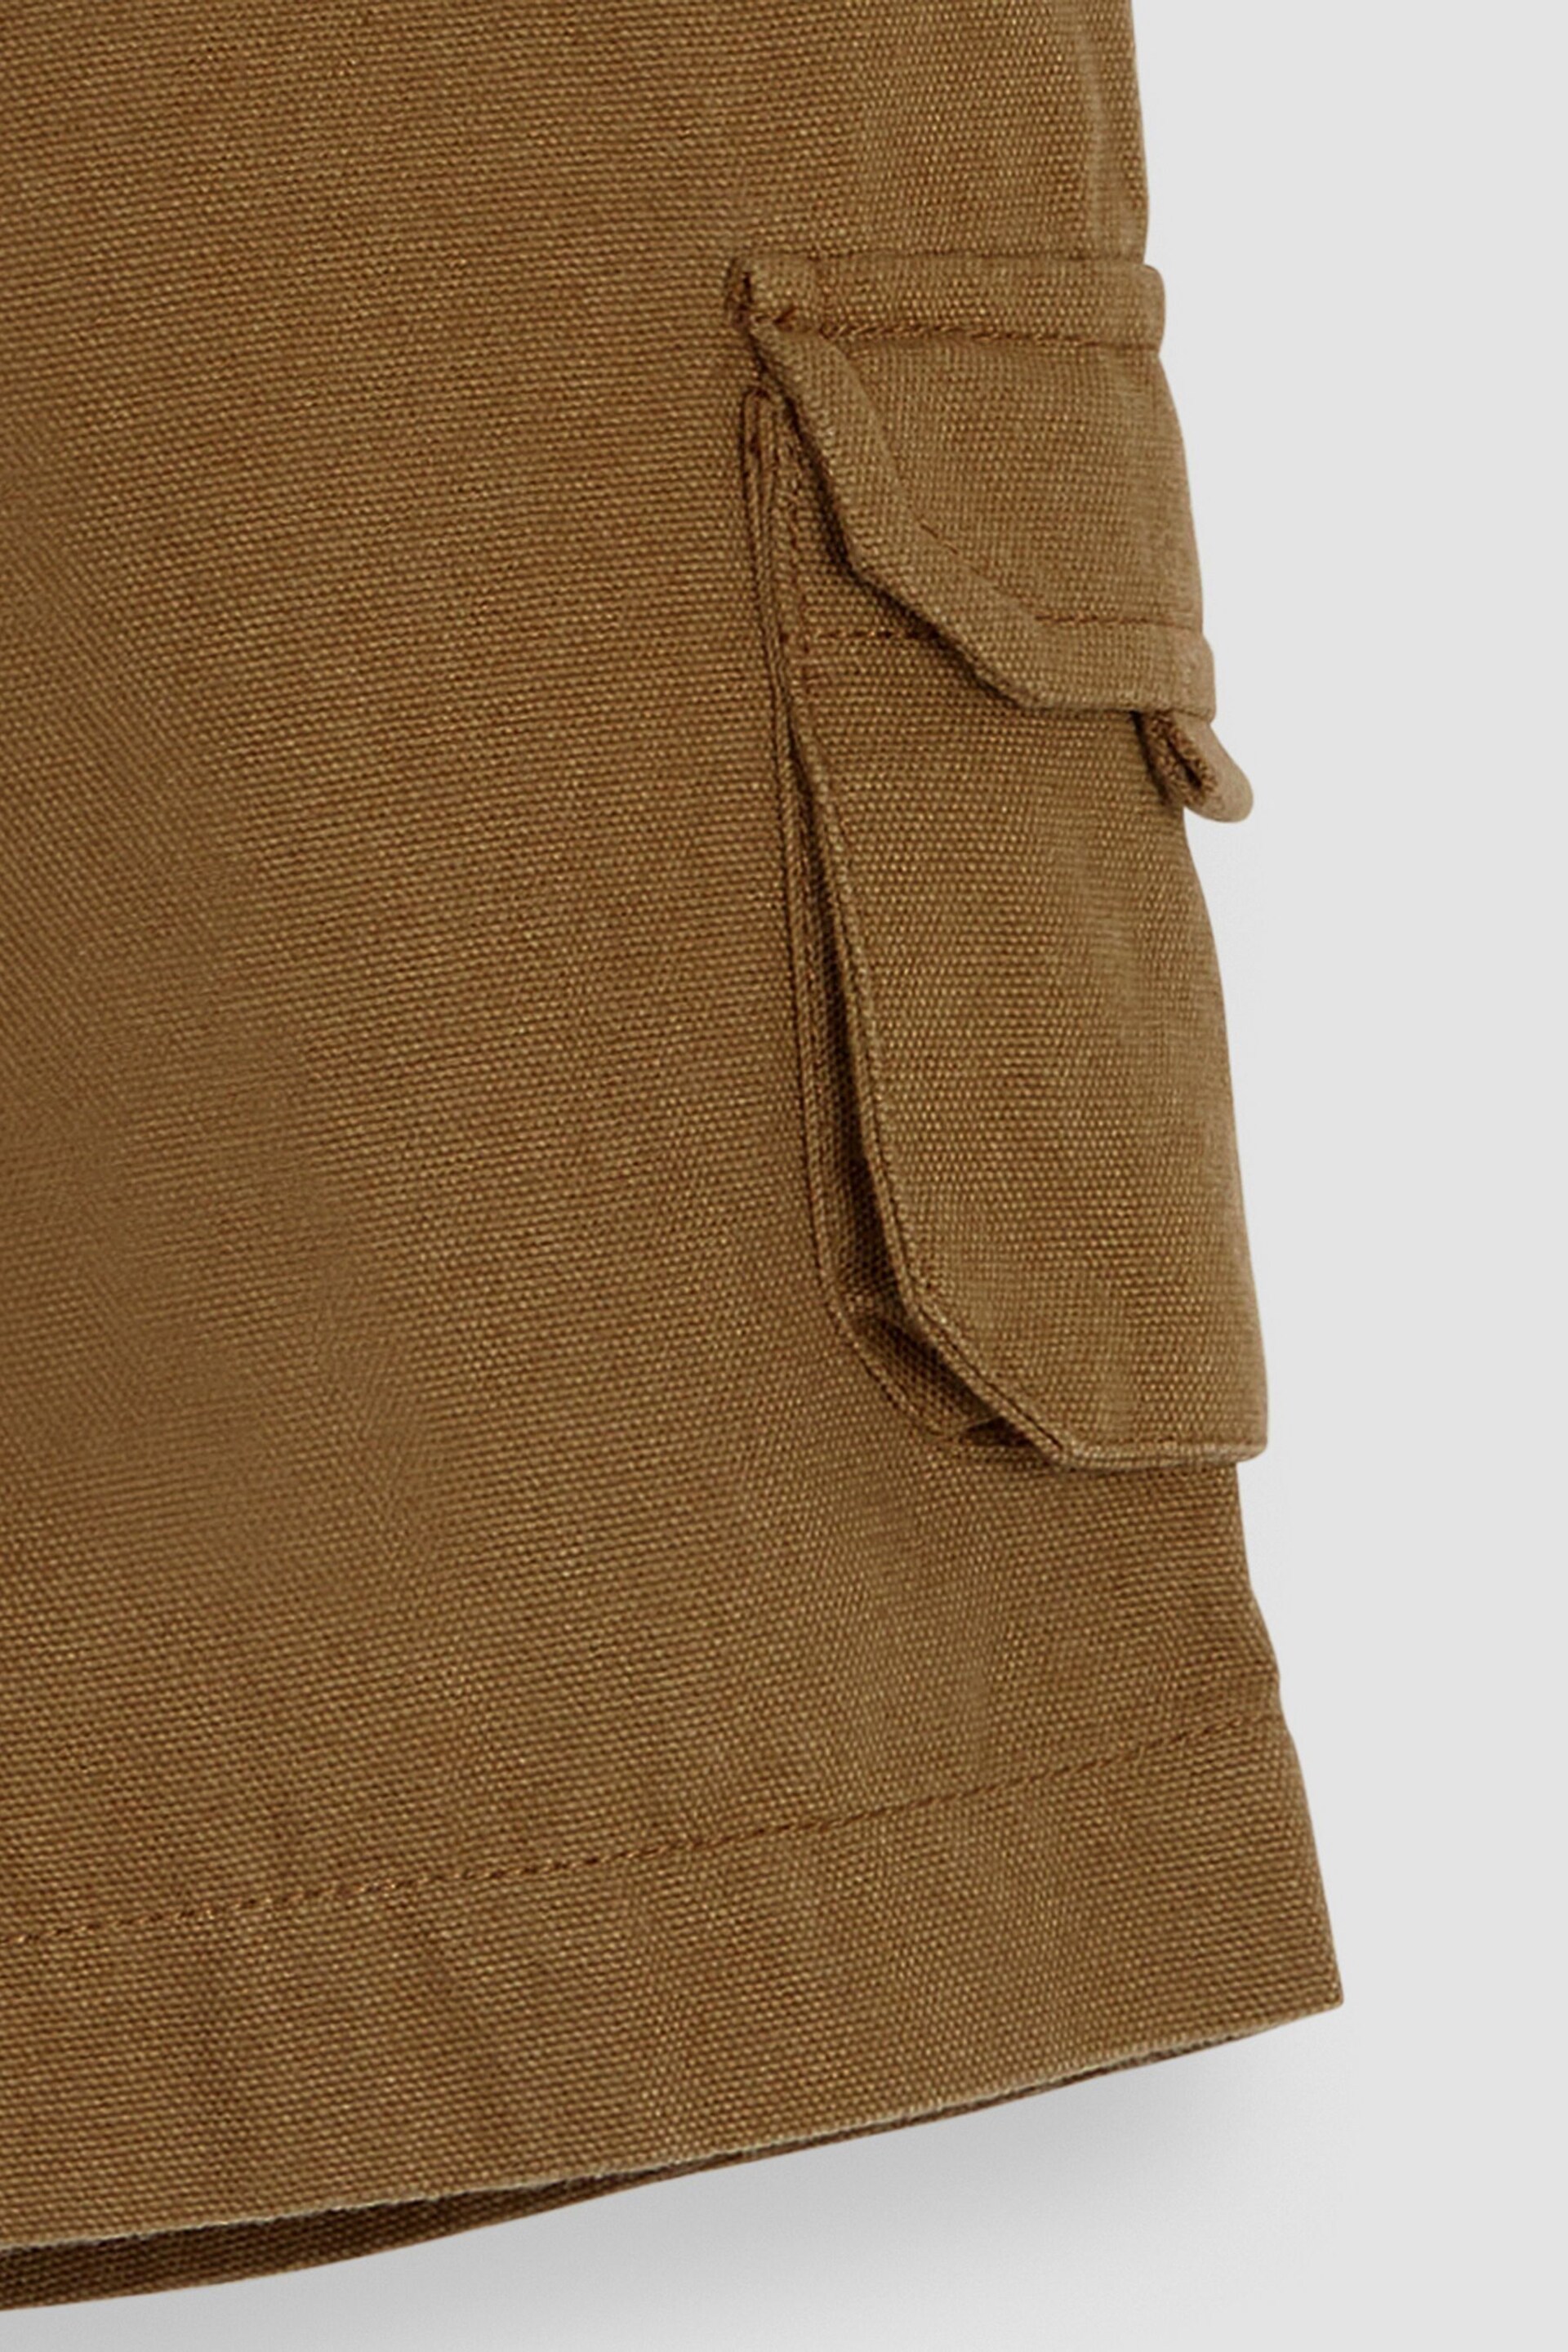 JoJo Maman Bébé Brown Cargo Shorts - Image 3 of 3